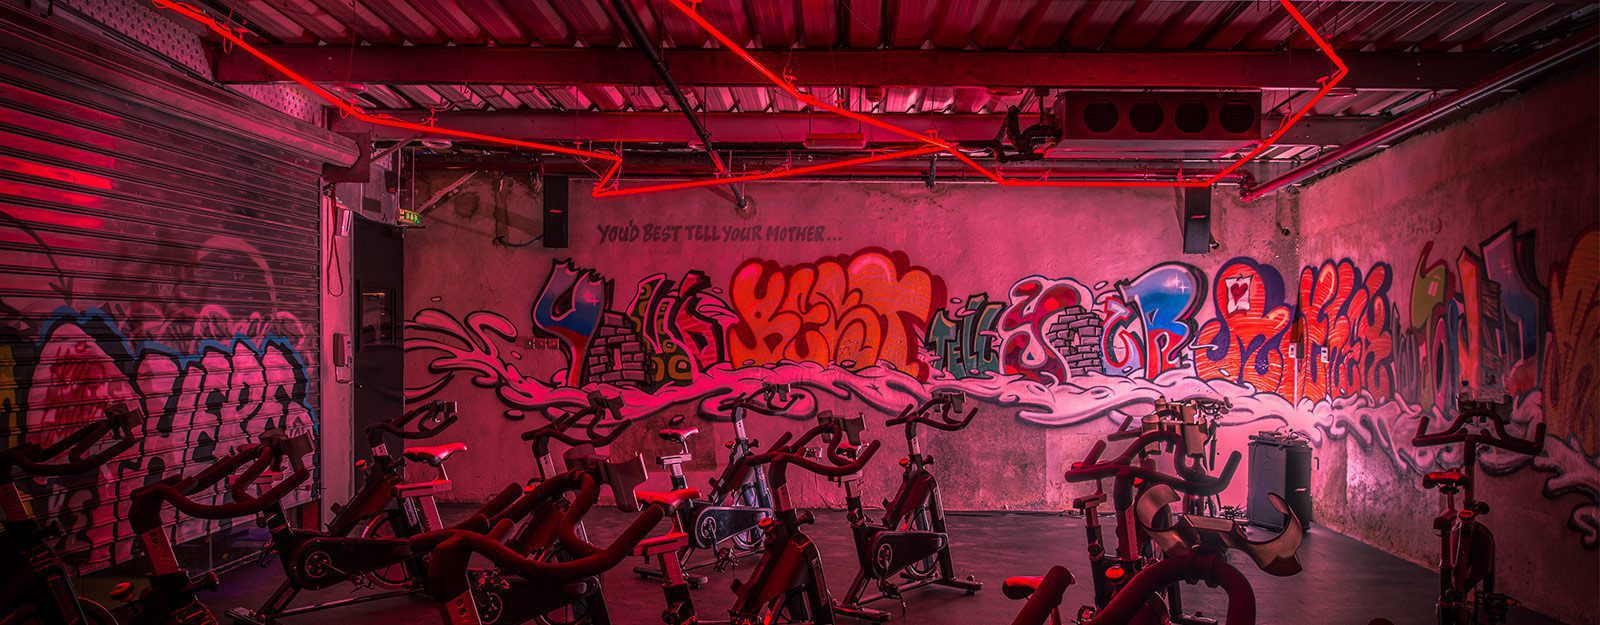 Warehouse Gym – Mirdiff                         Dubai